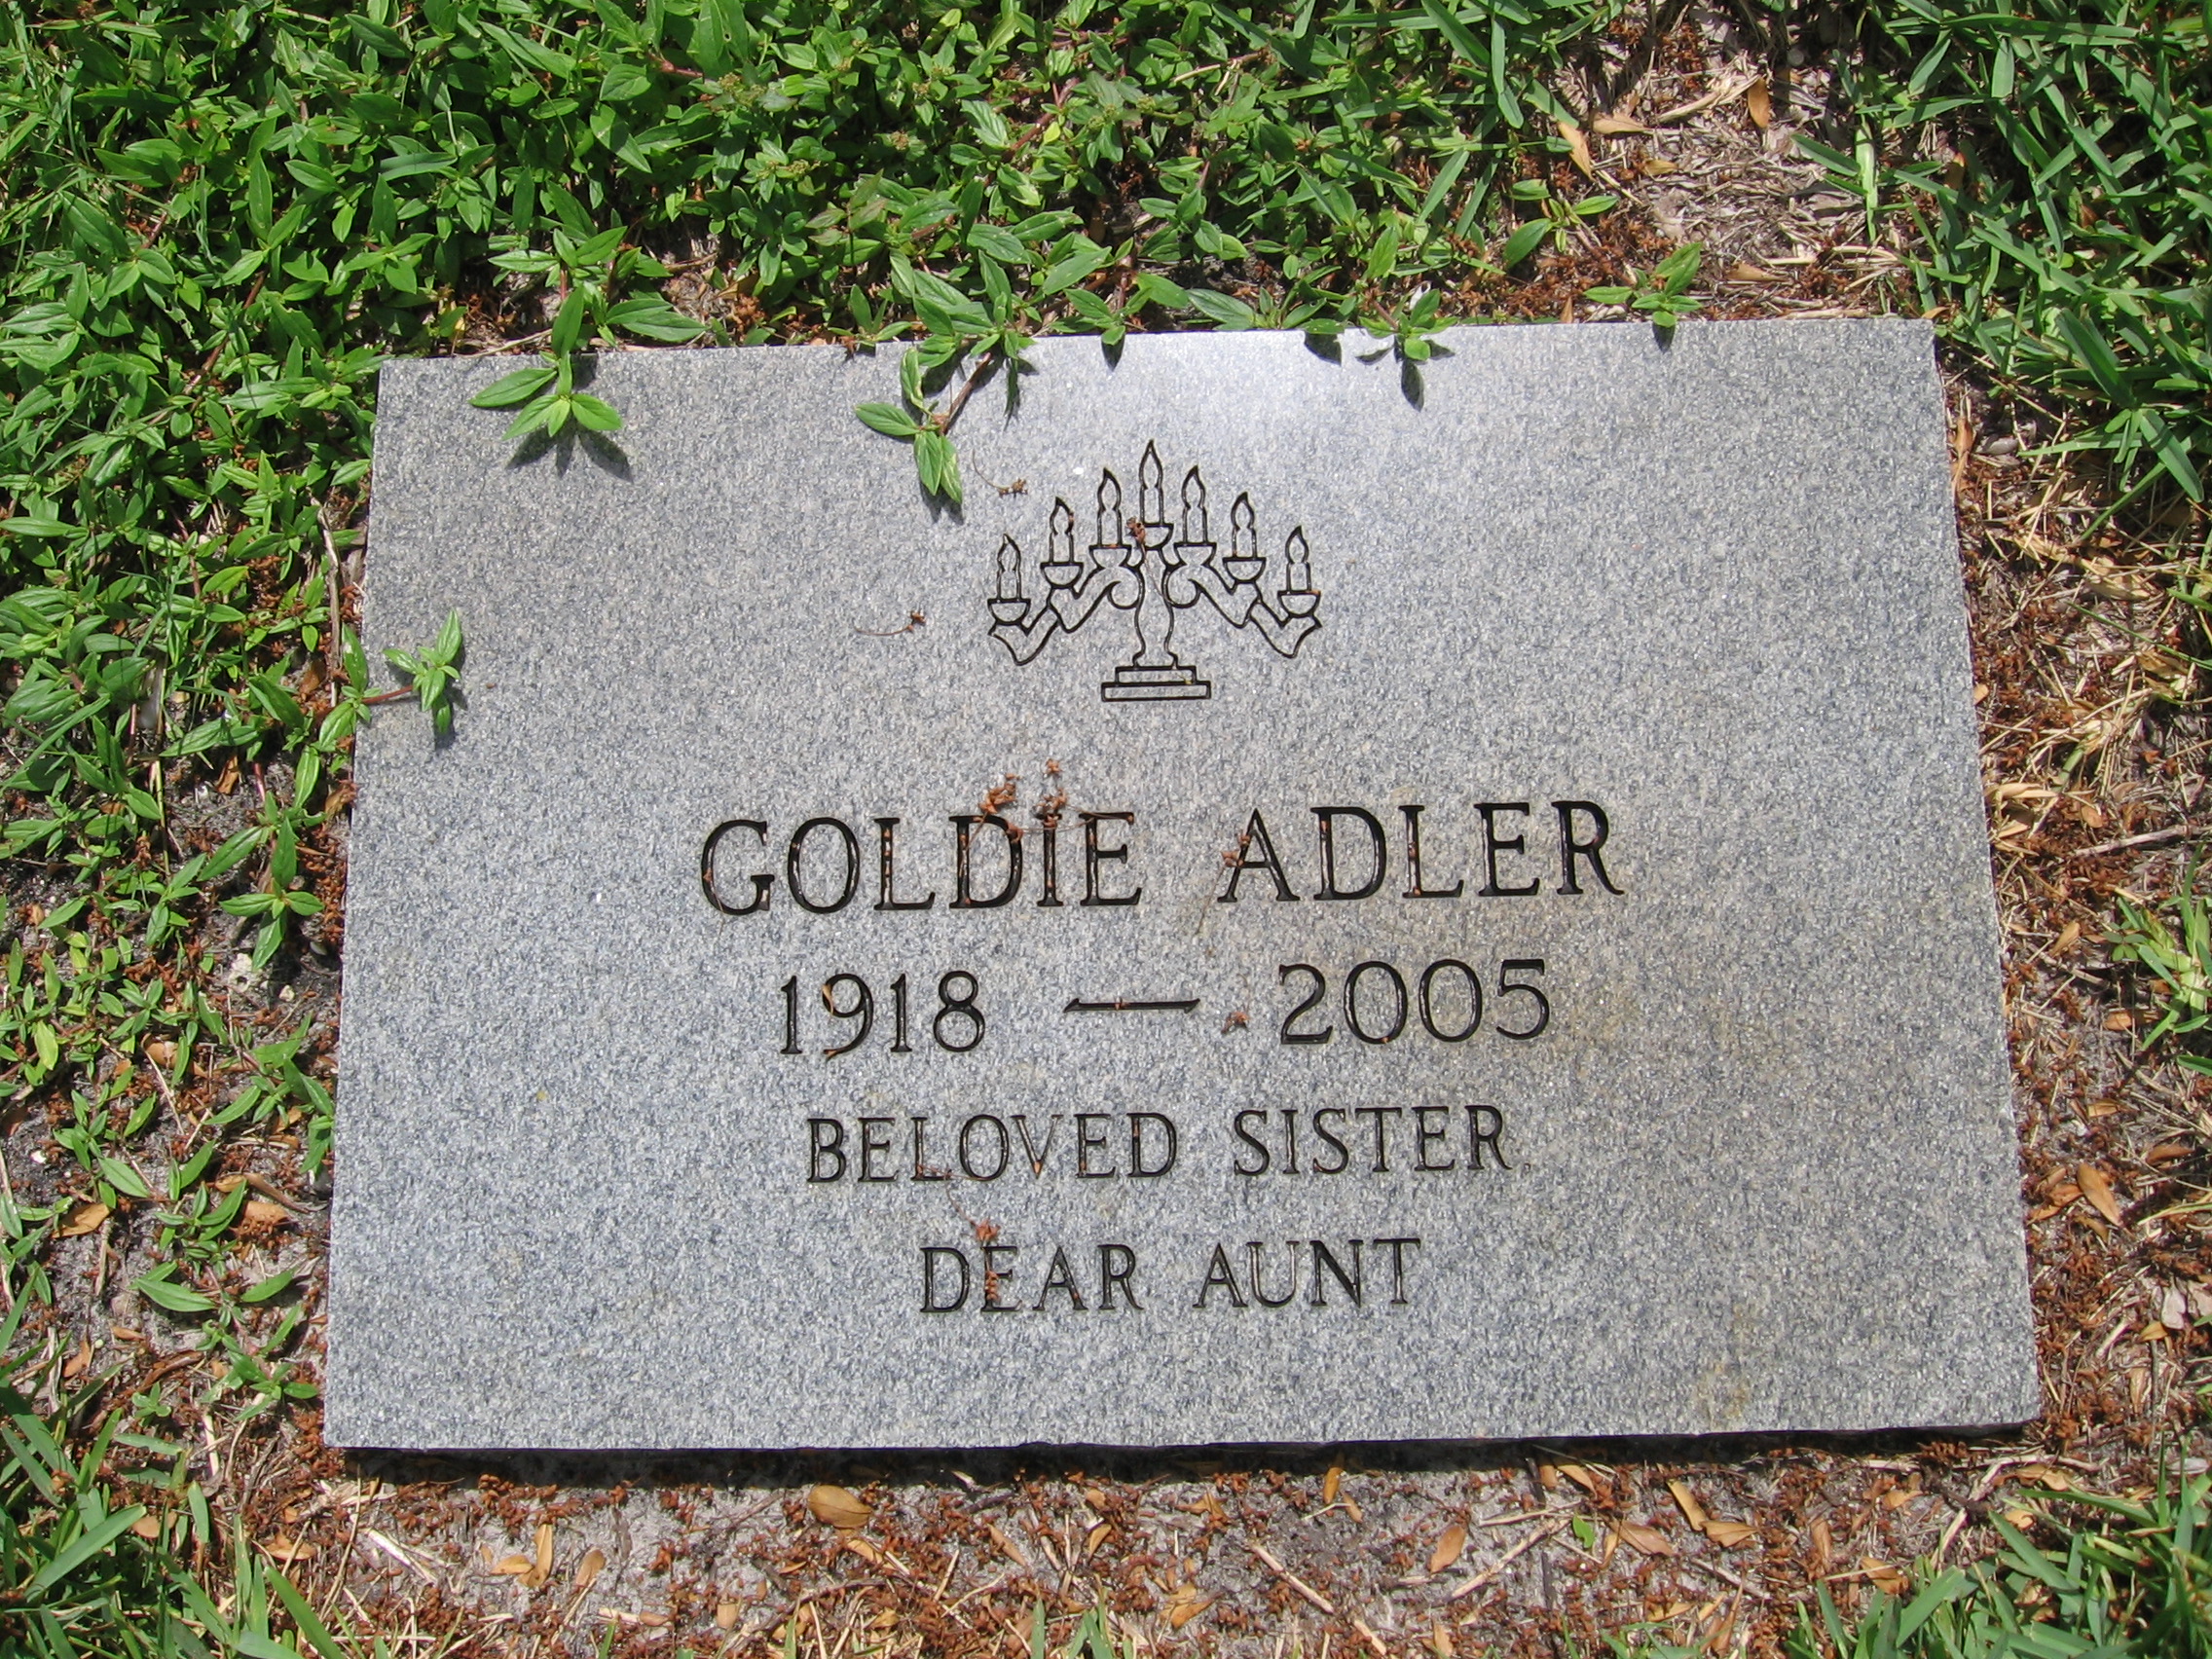 Goldie Adler